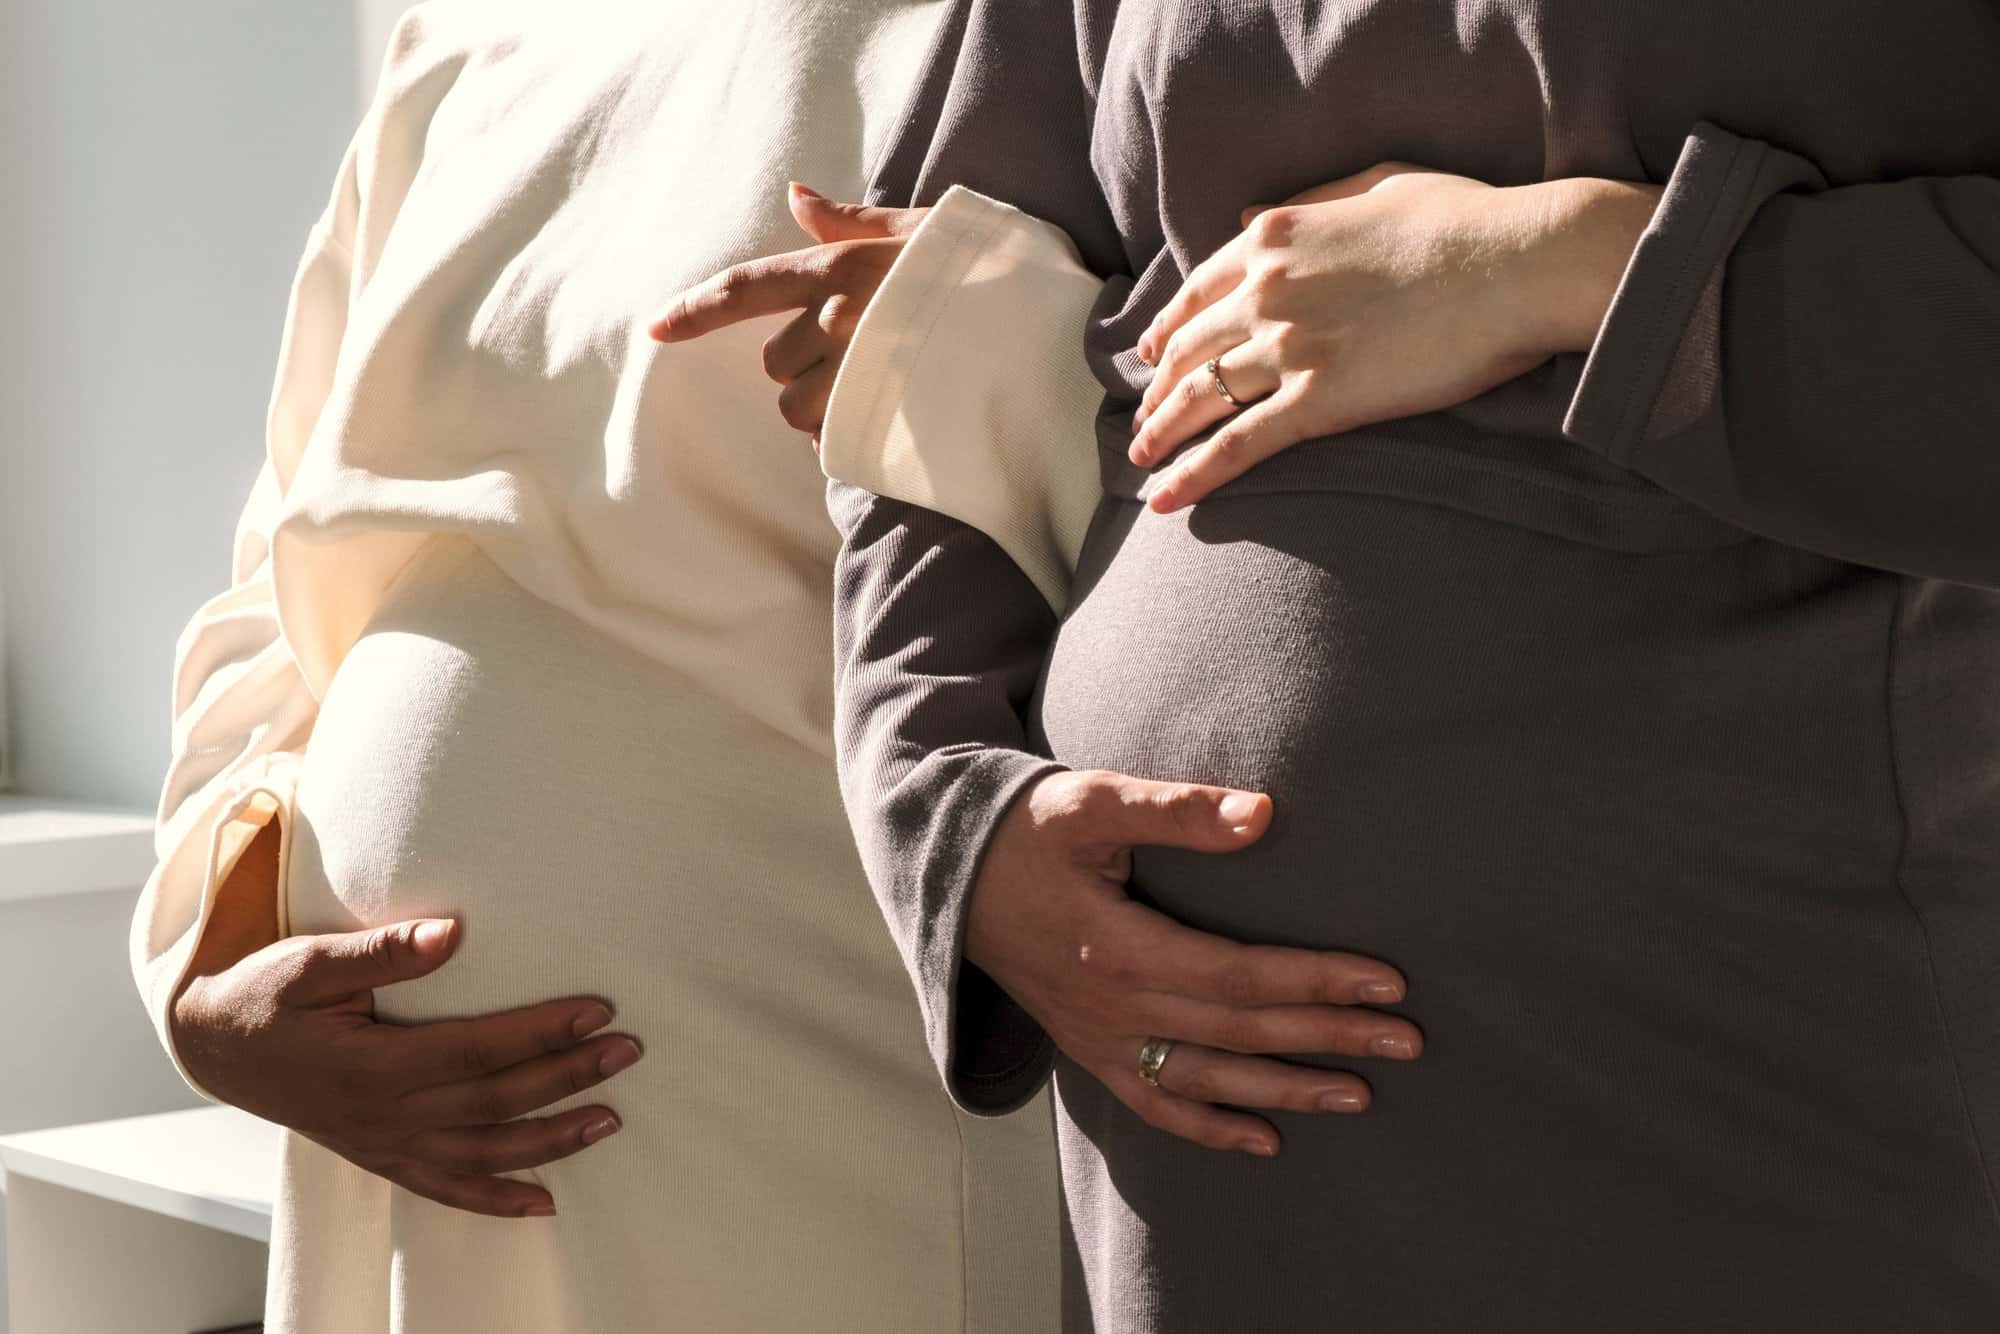 El efecto "contagio" en el embarazo existe, según dos estudios